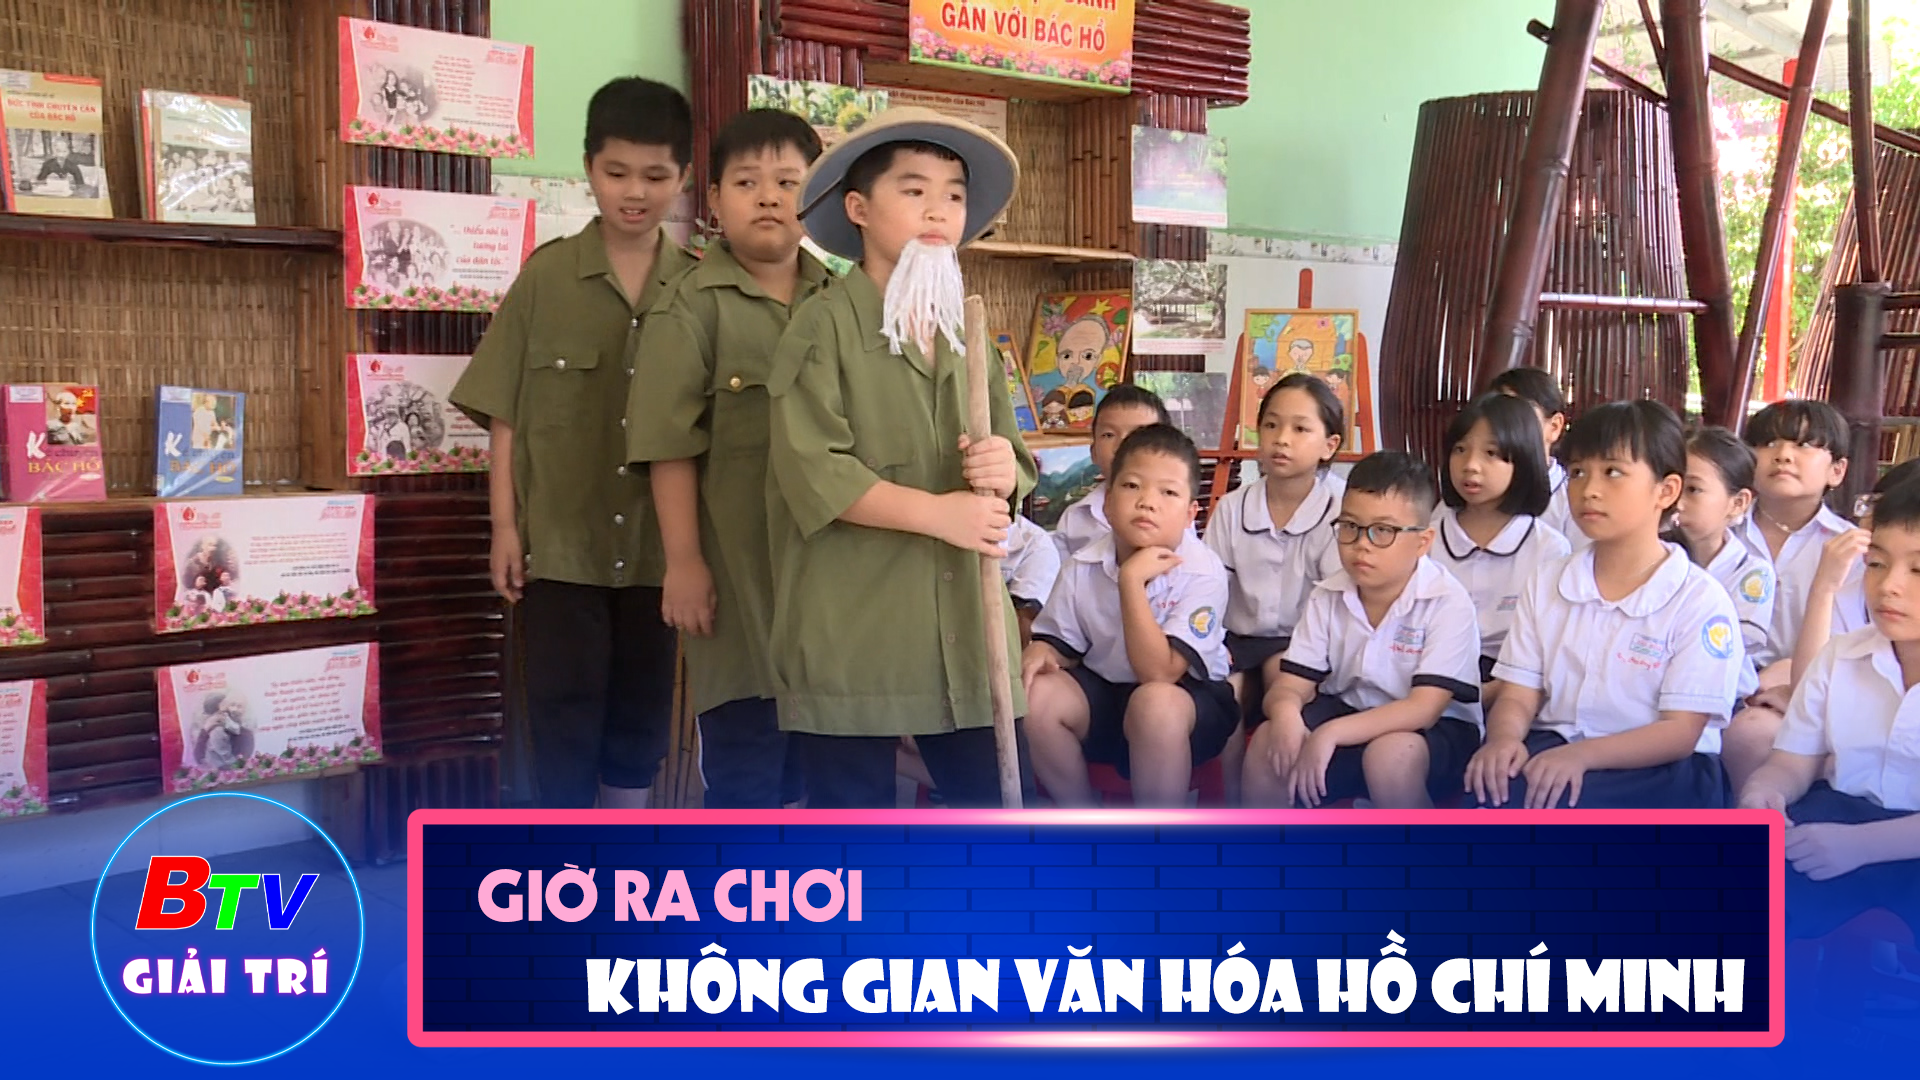 Không gian văn hóa Hồ Chí Minh ở Trường tiểu học Phú Hòa 3